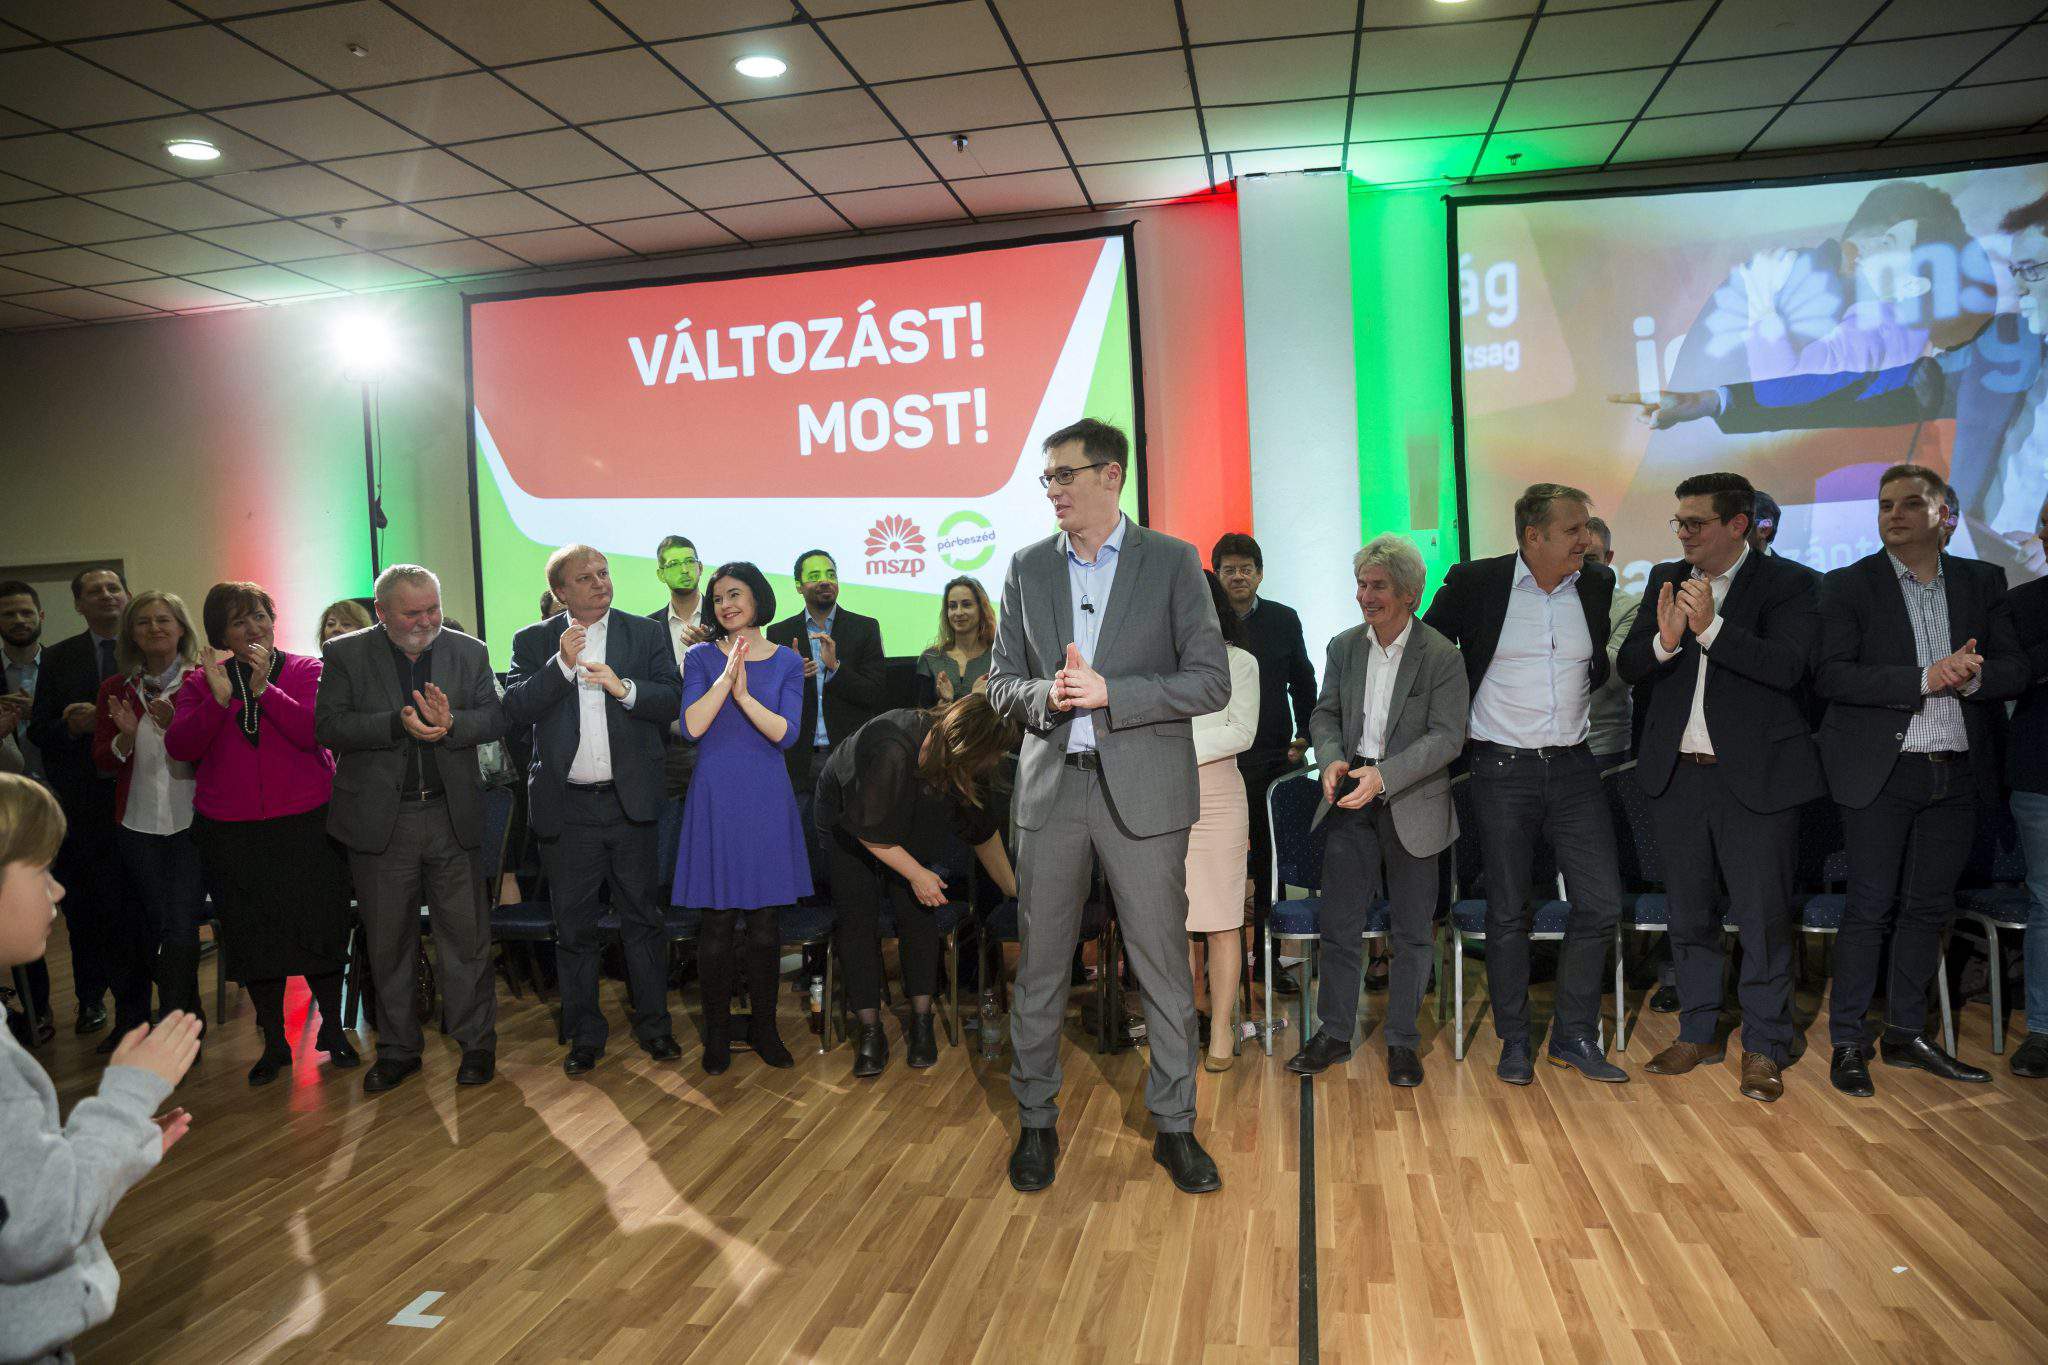 總理候選人匈牙利左翼 Karácsony